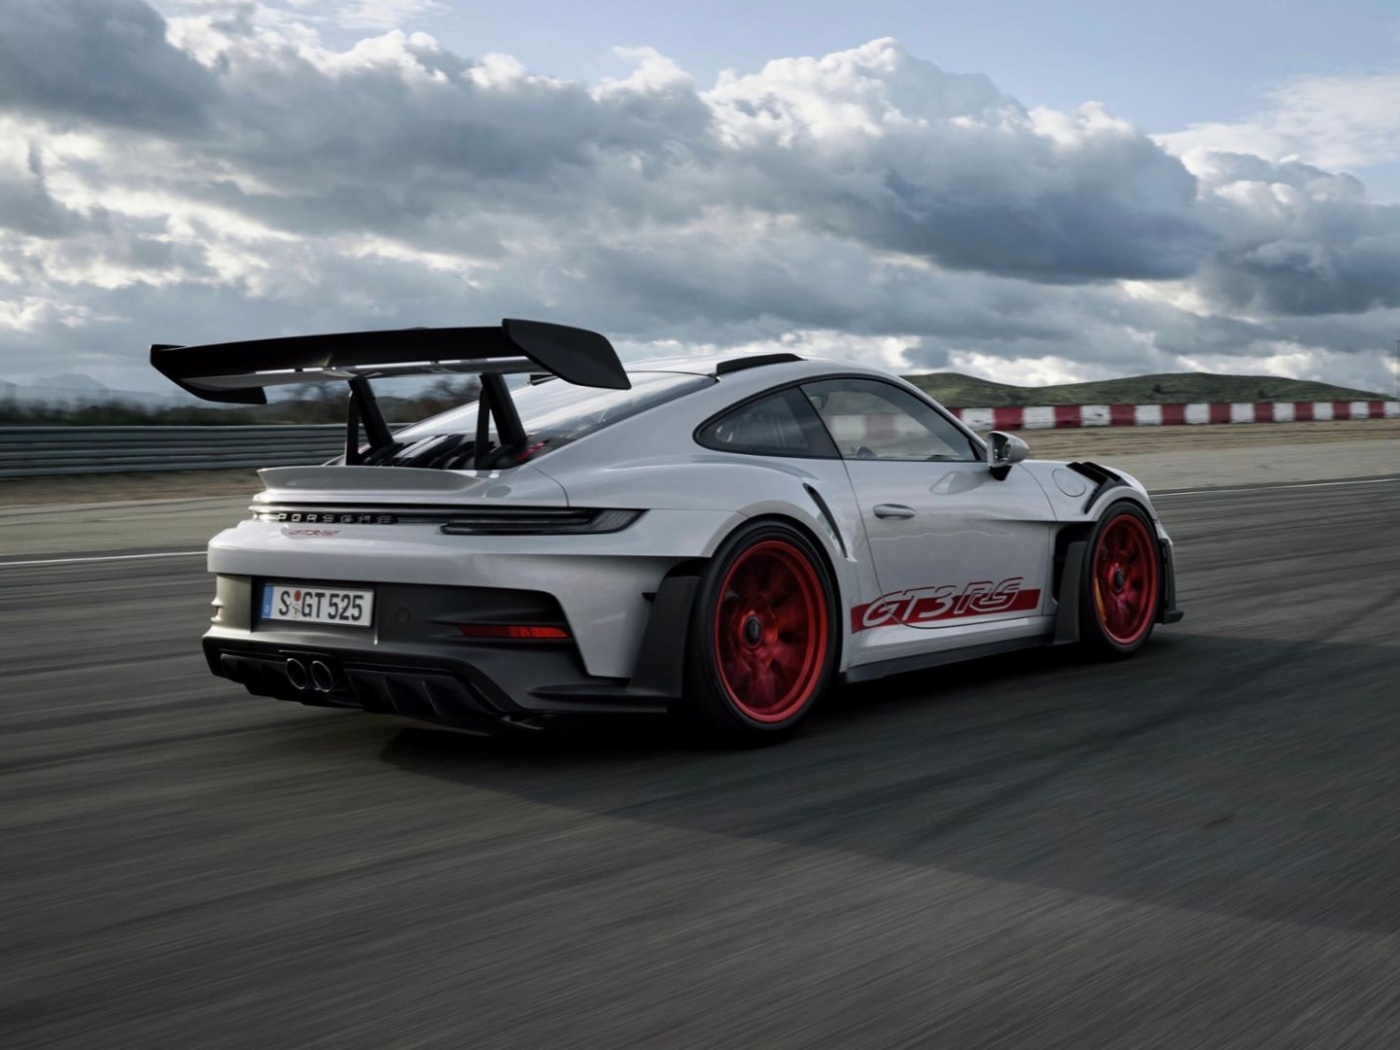 Nové Porsche 911 GT3 RS pohání atmosférický šestiválec o výkonu 525 koní